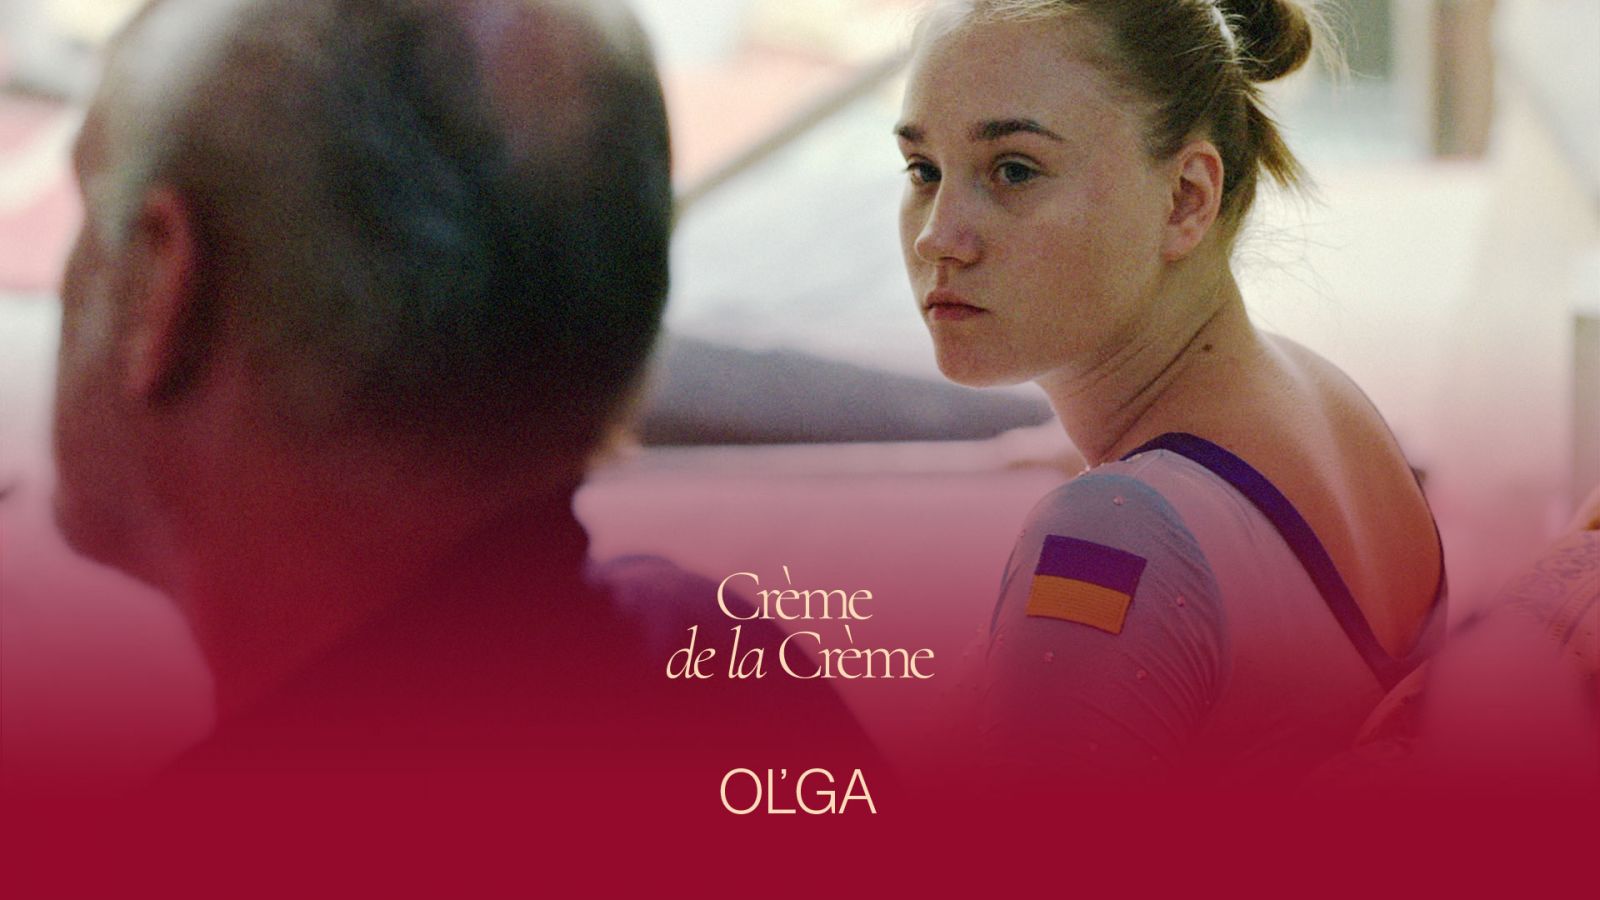 La semaine du film français Crème de la Crème 2022 présentera le film franco-suisse-ukrainien Olga !